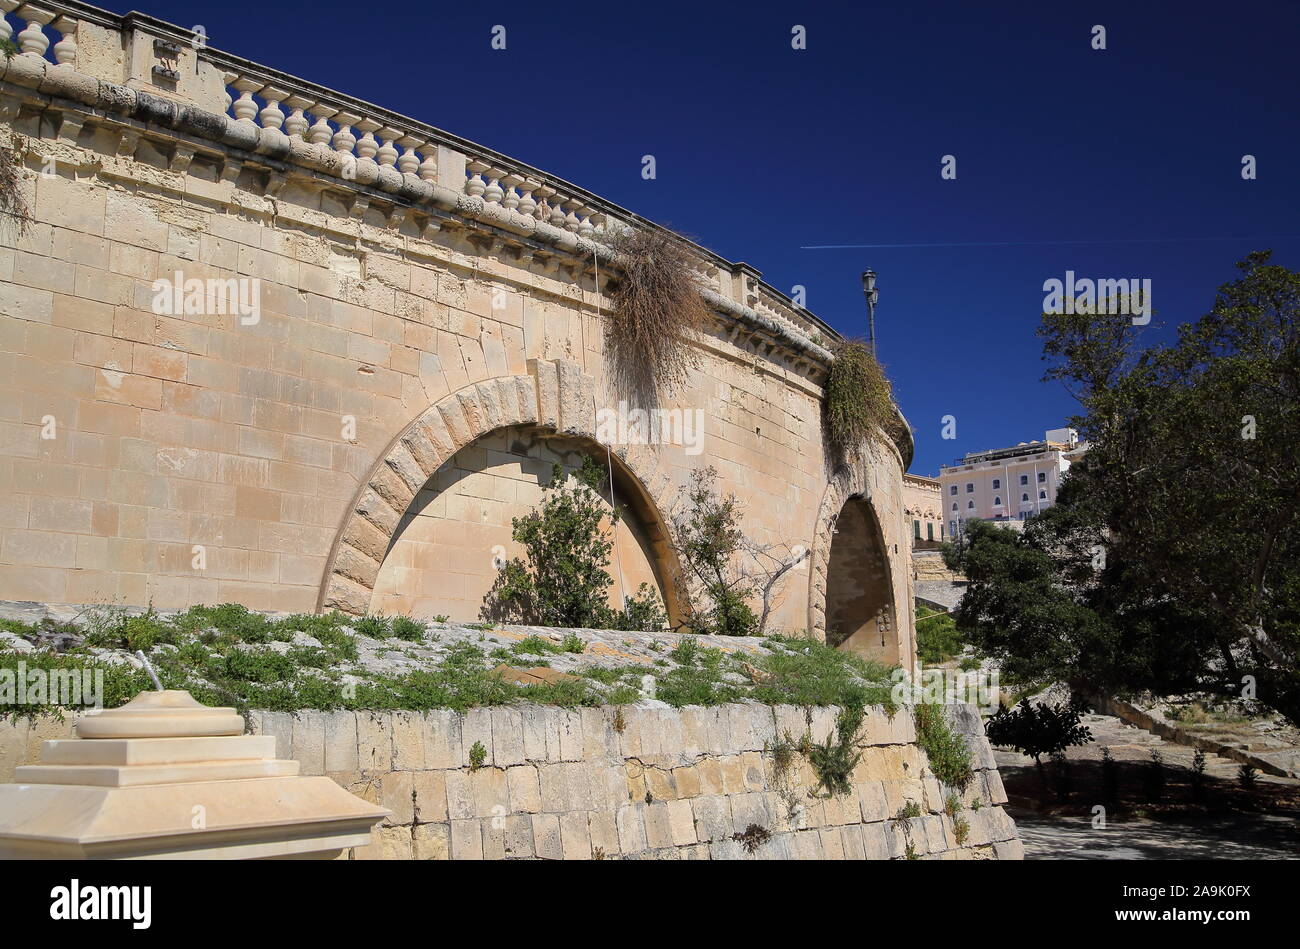 Historische Mauer befestigte Zentrum von Valett, Hauptstadt von Malta, gegen den blauen Himmel, direkt neben dem Park, Garten mit grünen Bäumen, ohne dass die Leute Stockfoto